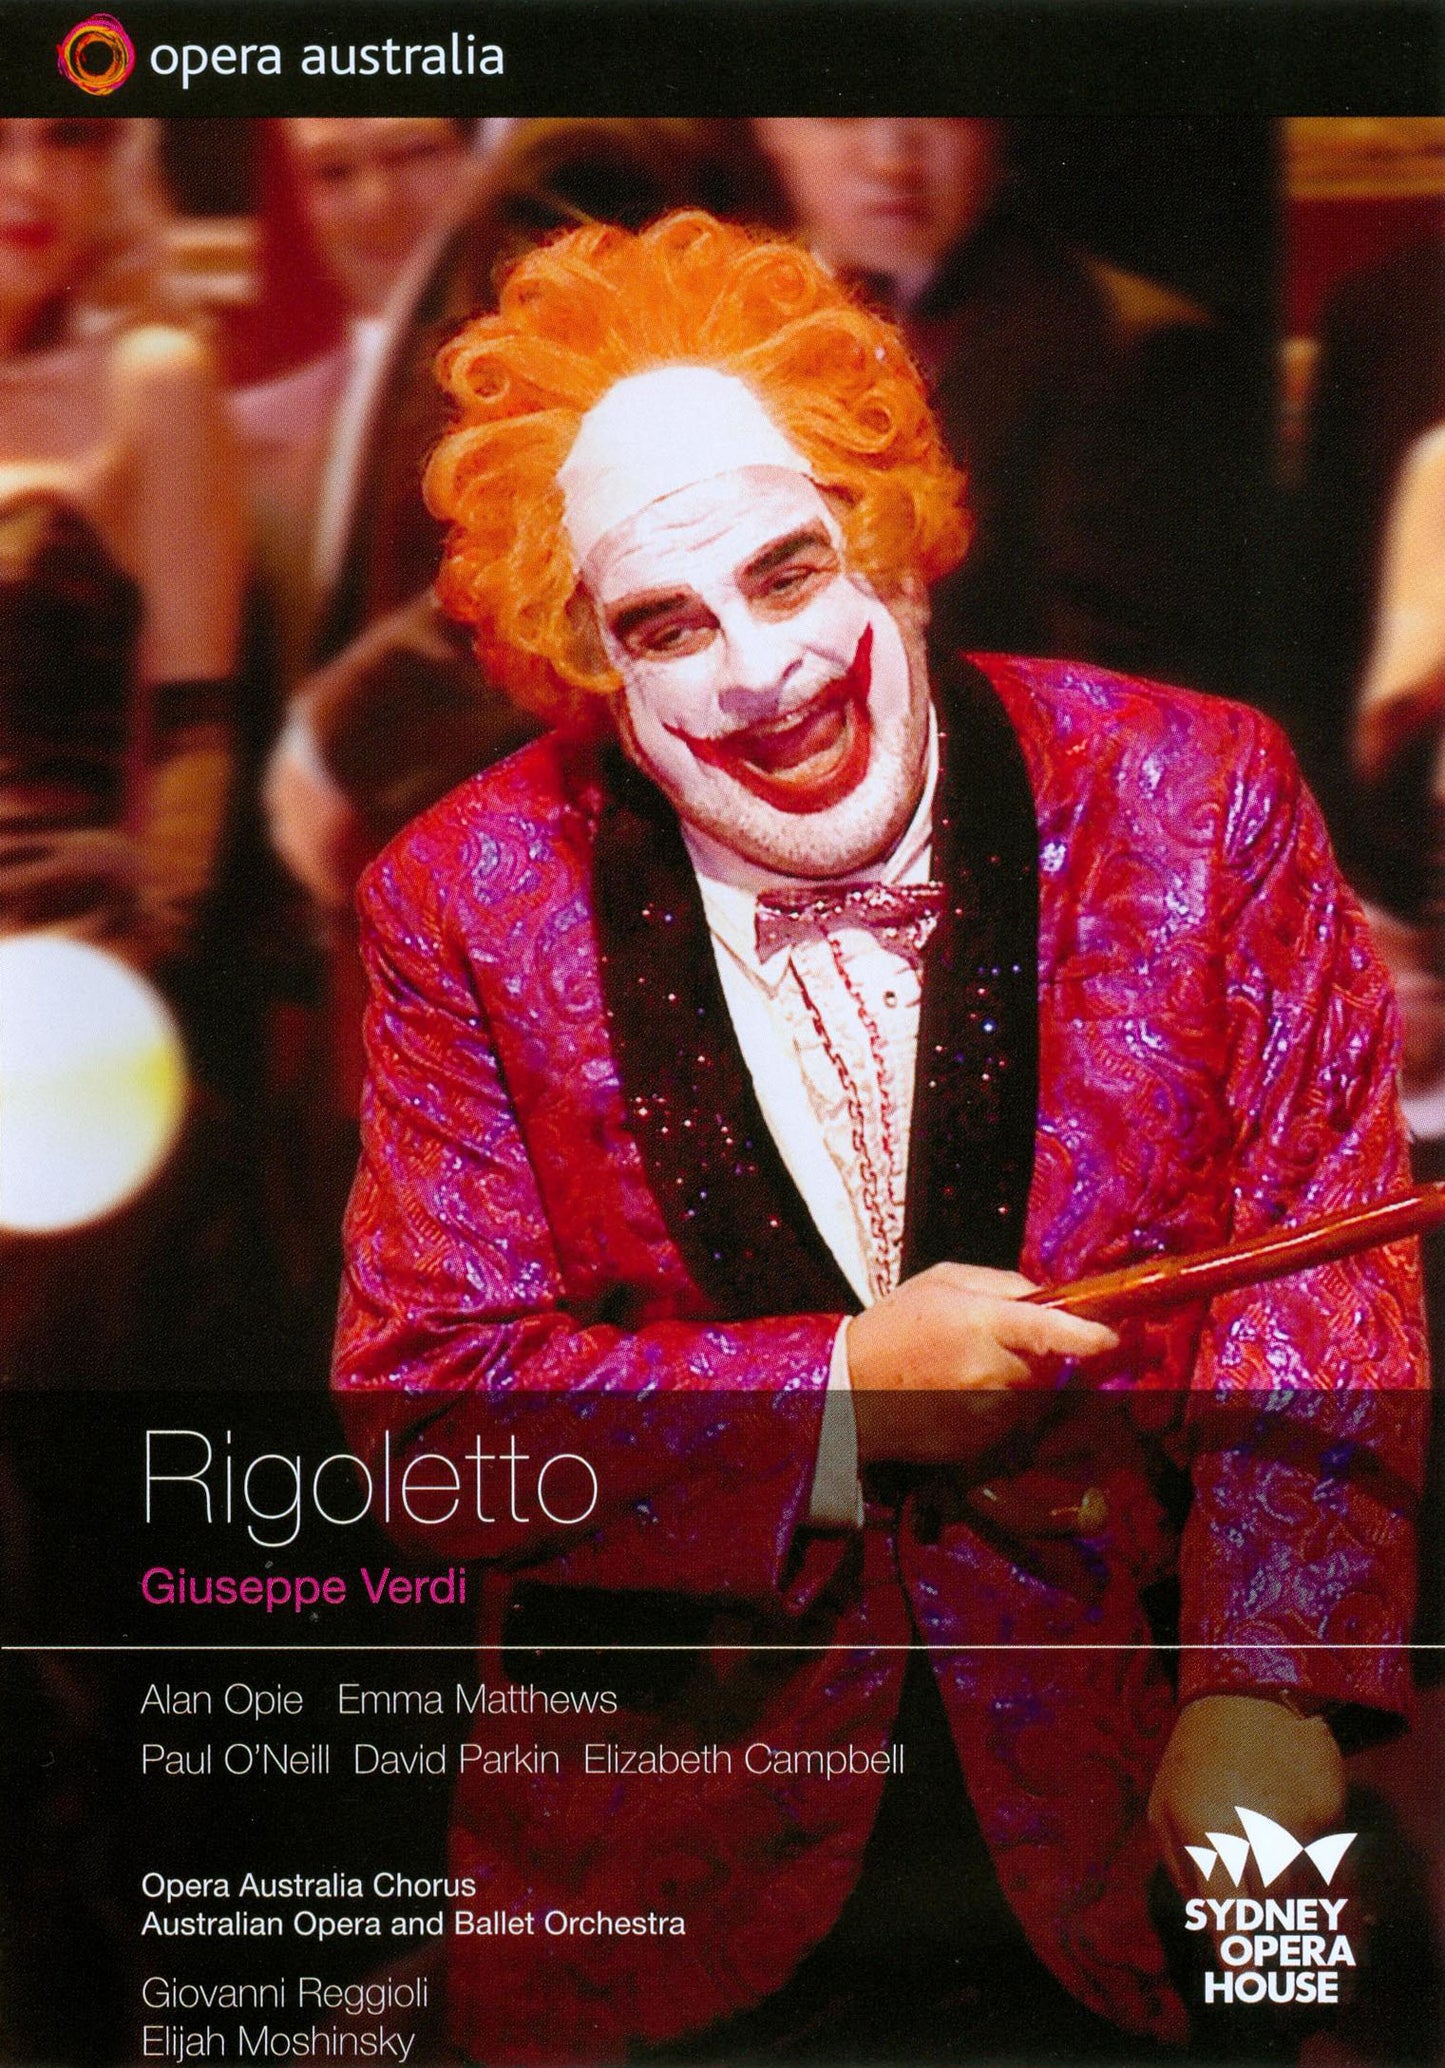 Rigoletto cover art